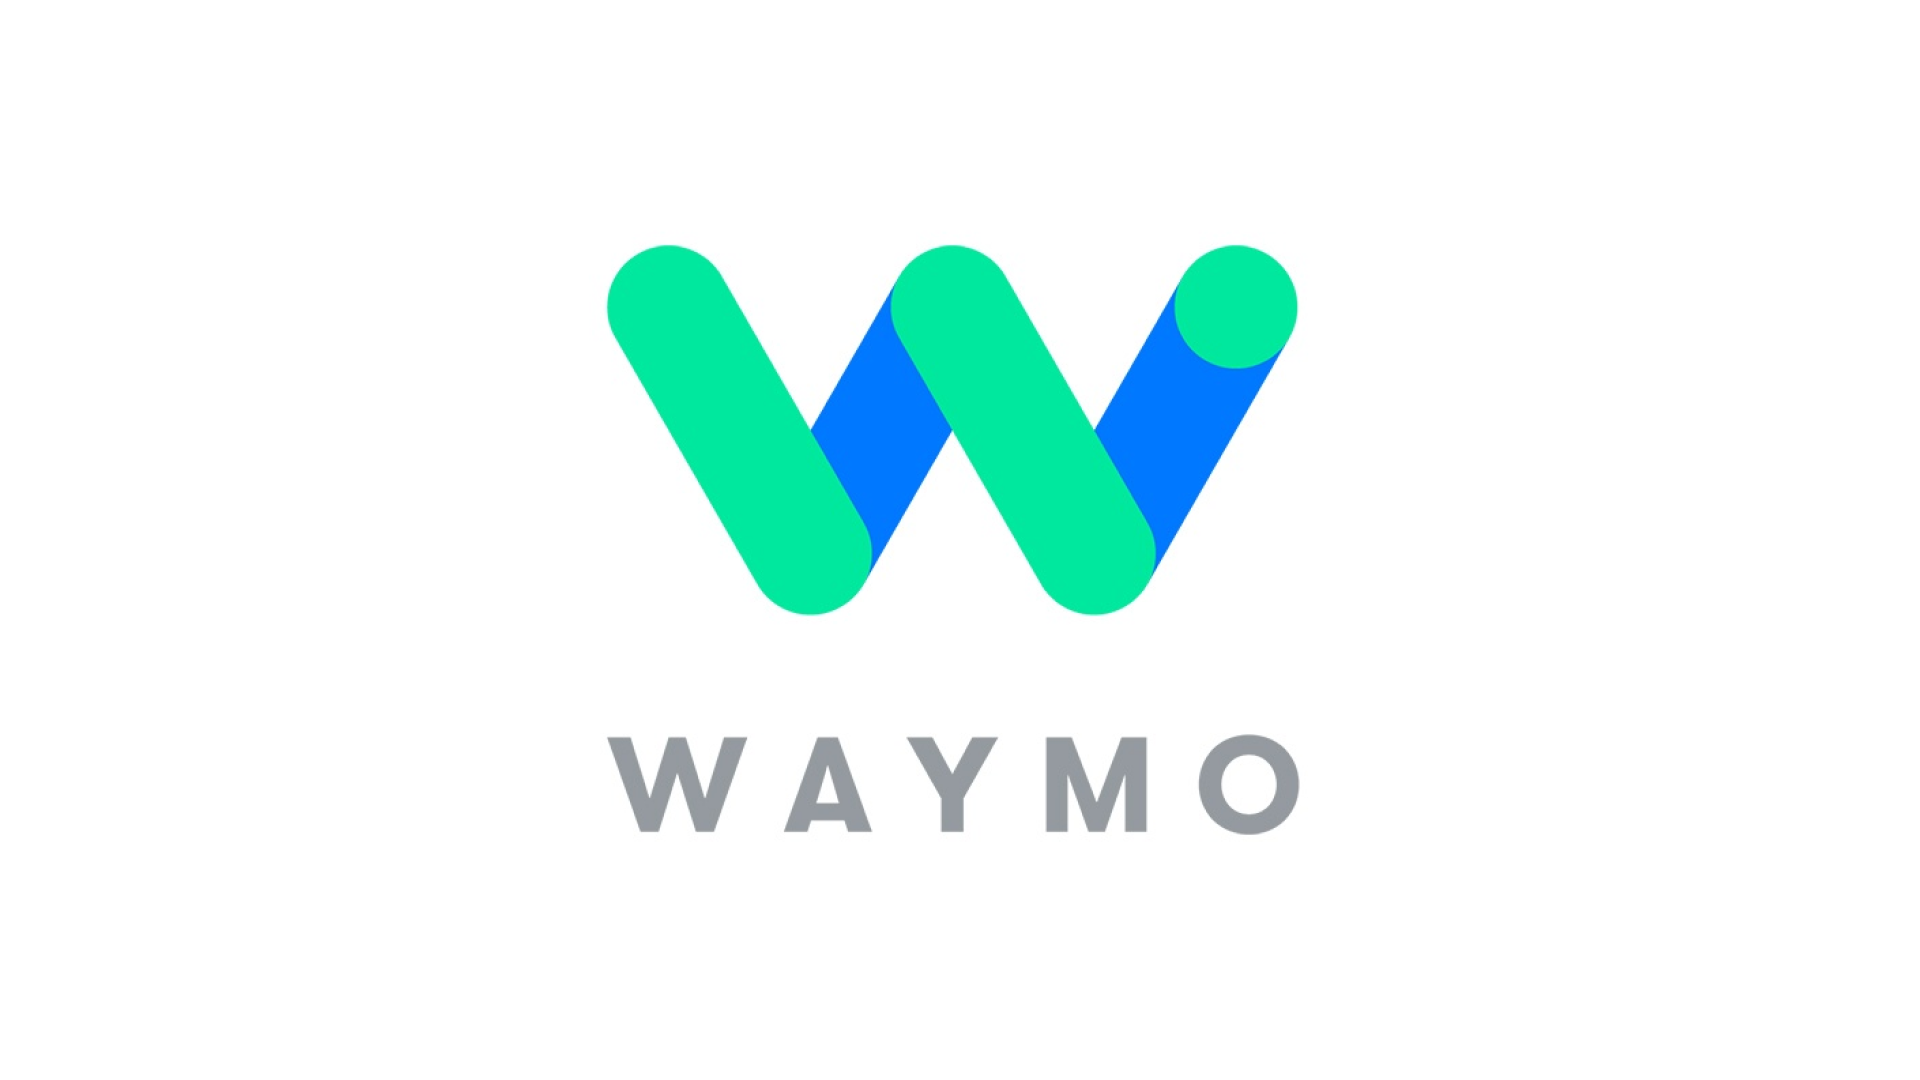 自動運転車開発企業であるWaymo、50億ドルの資金調達を実施